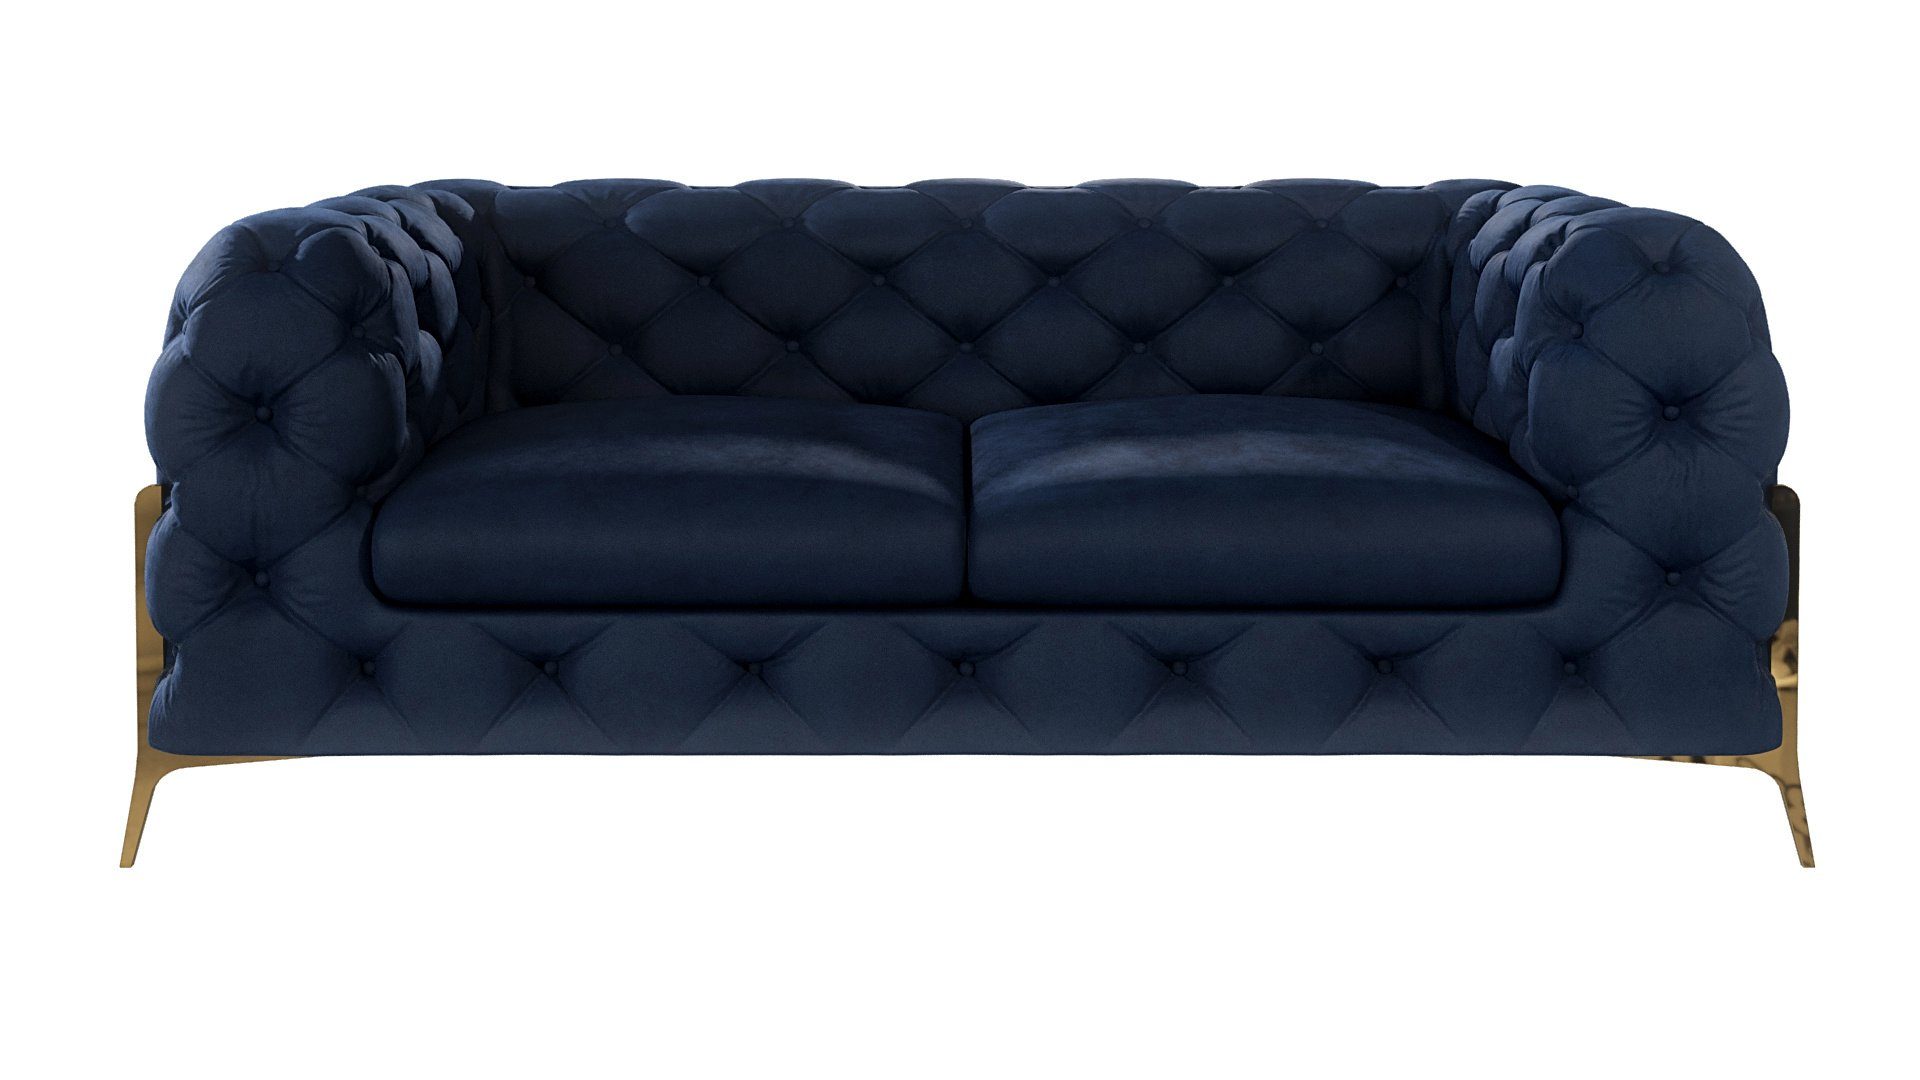 Füßen, S-Style Ashley mit Chesterfield Marineblau mit Goldene 2-Sitzer Sofa Metall Möbel Wellenfederung